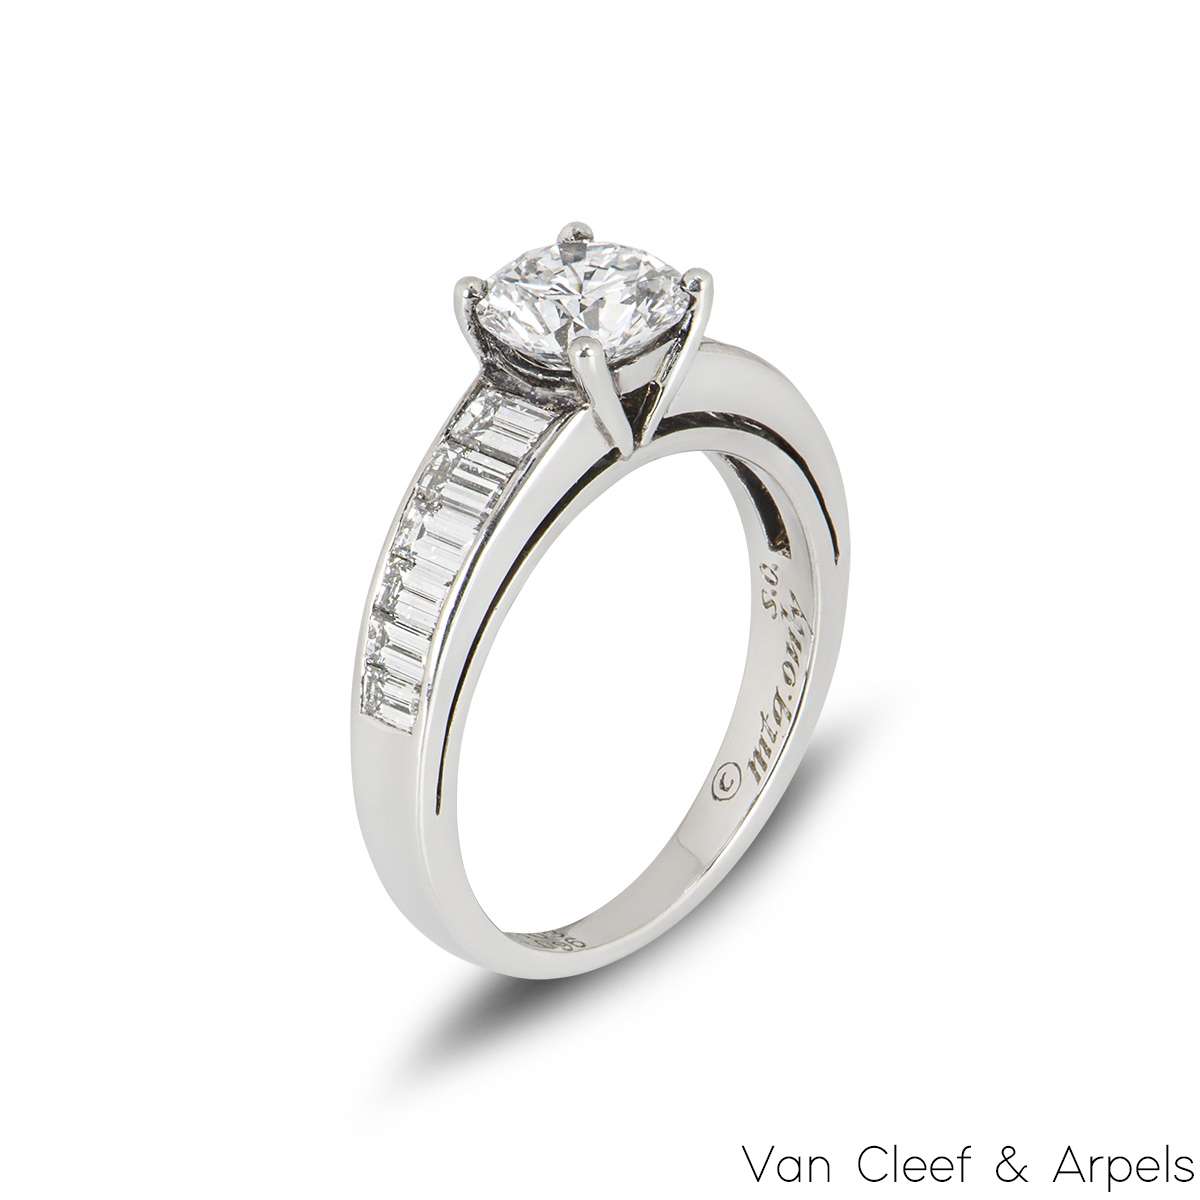 Van Cleef & Arpels Round Brilliant Cut Diamond Ring in Platinum 1.03ct